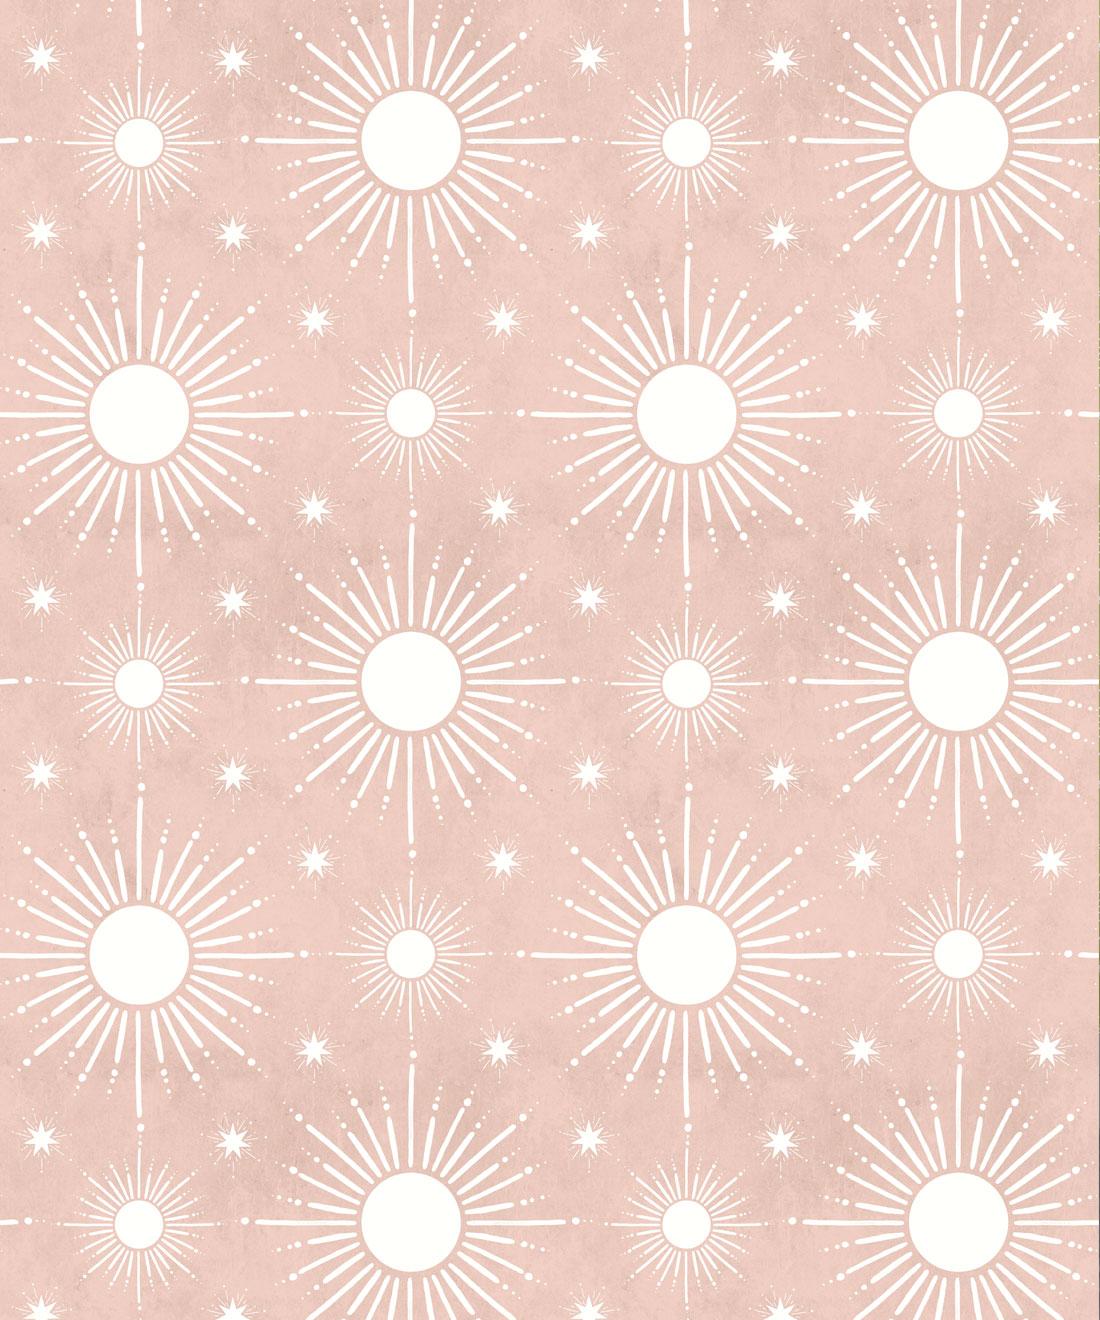 Star Lights Texture widescreen wallpaper | Bokeh background, Textured  background, Light texture